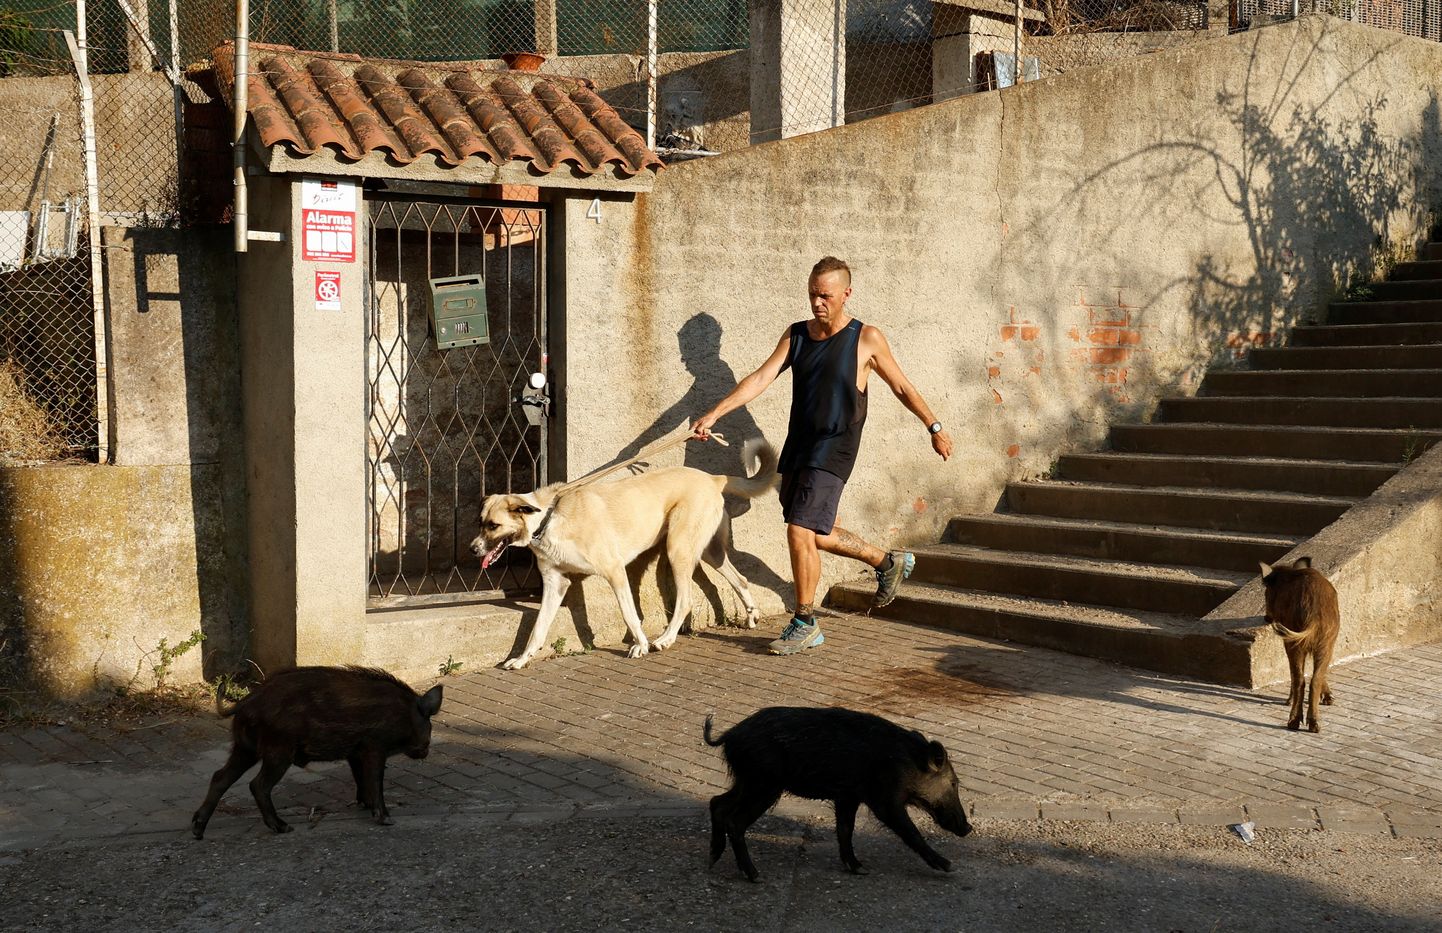 Grupp metssigu ja mees koeraga mööduvad üksteisest Barcelonas – nii tavaliseks  on muutunud metssead linnapildis.